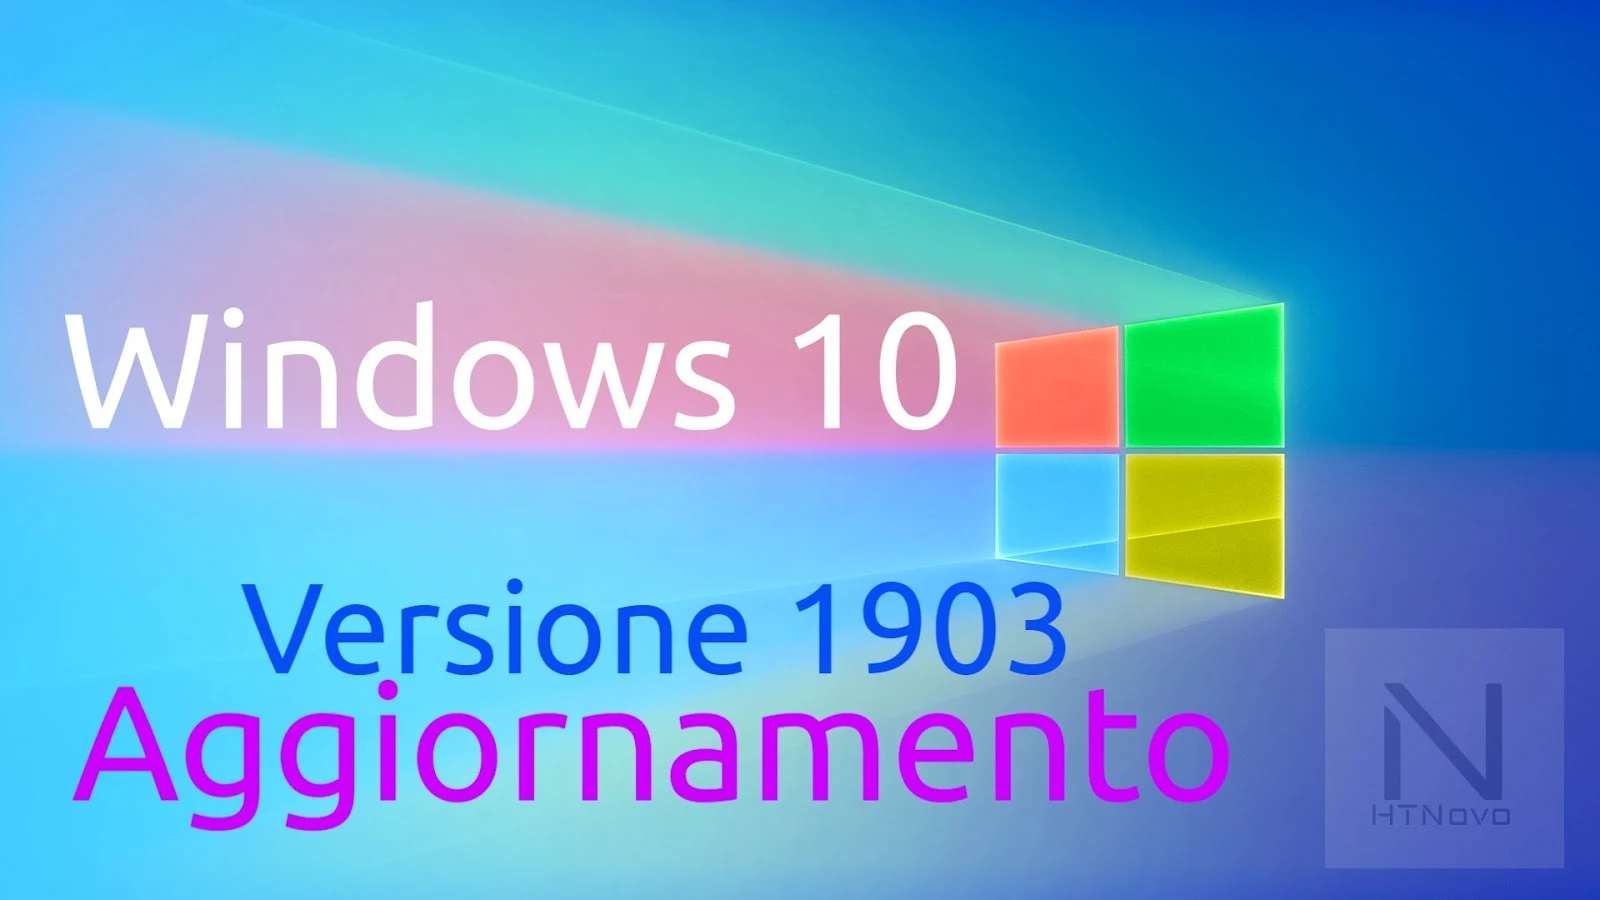 Aggiornamento-windows-10-versione-1903